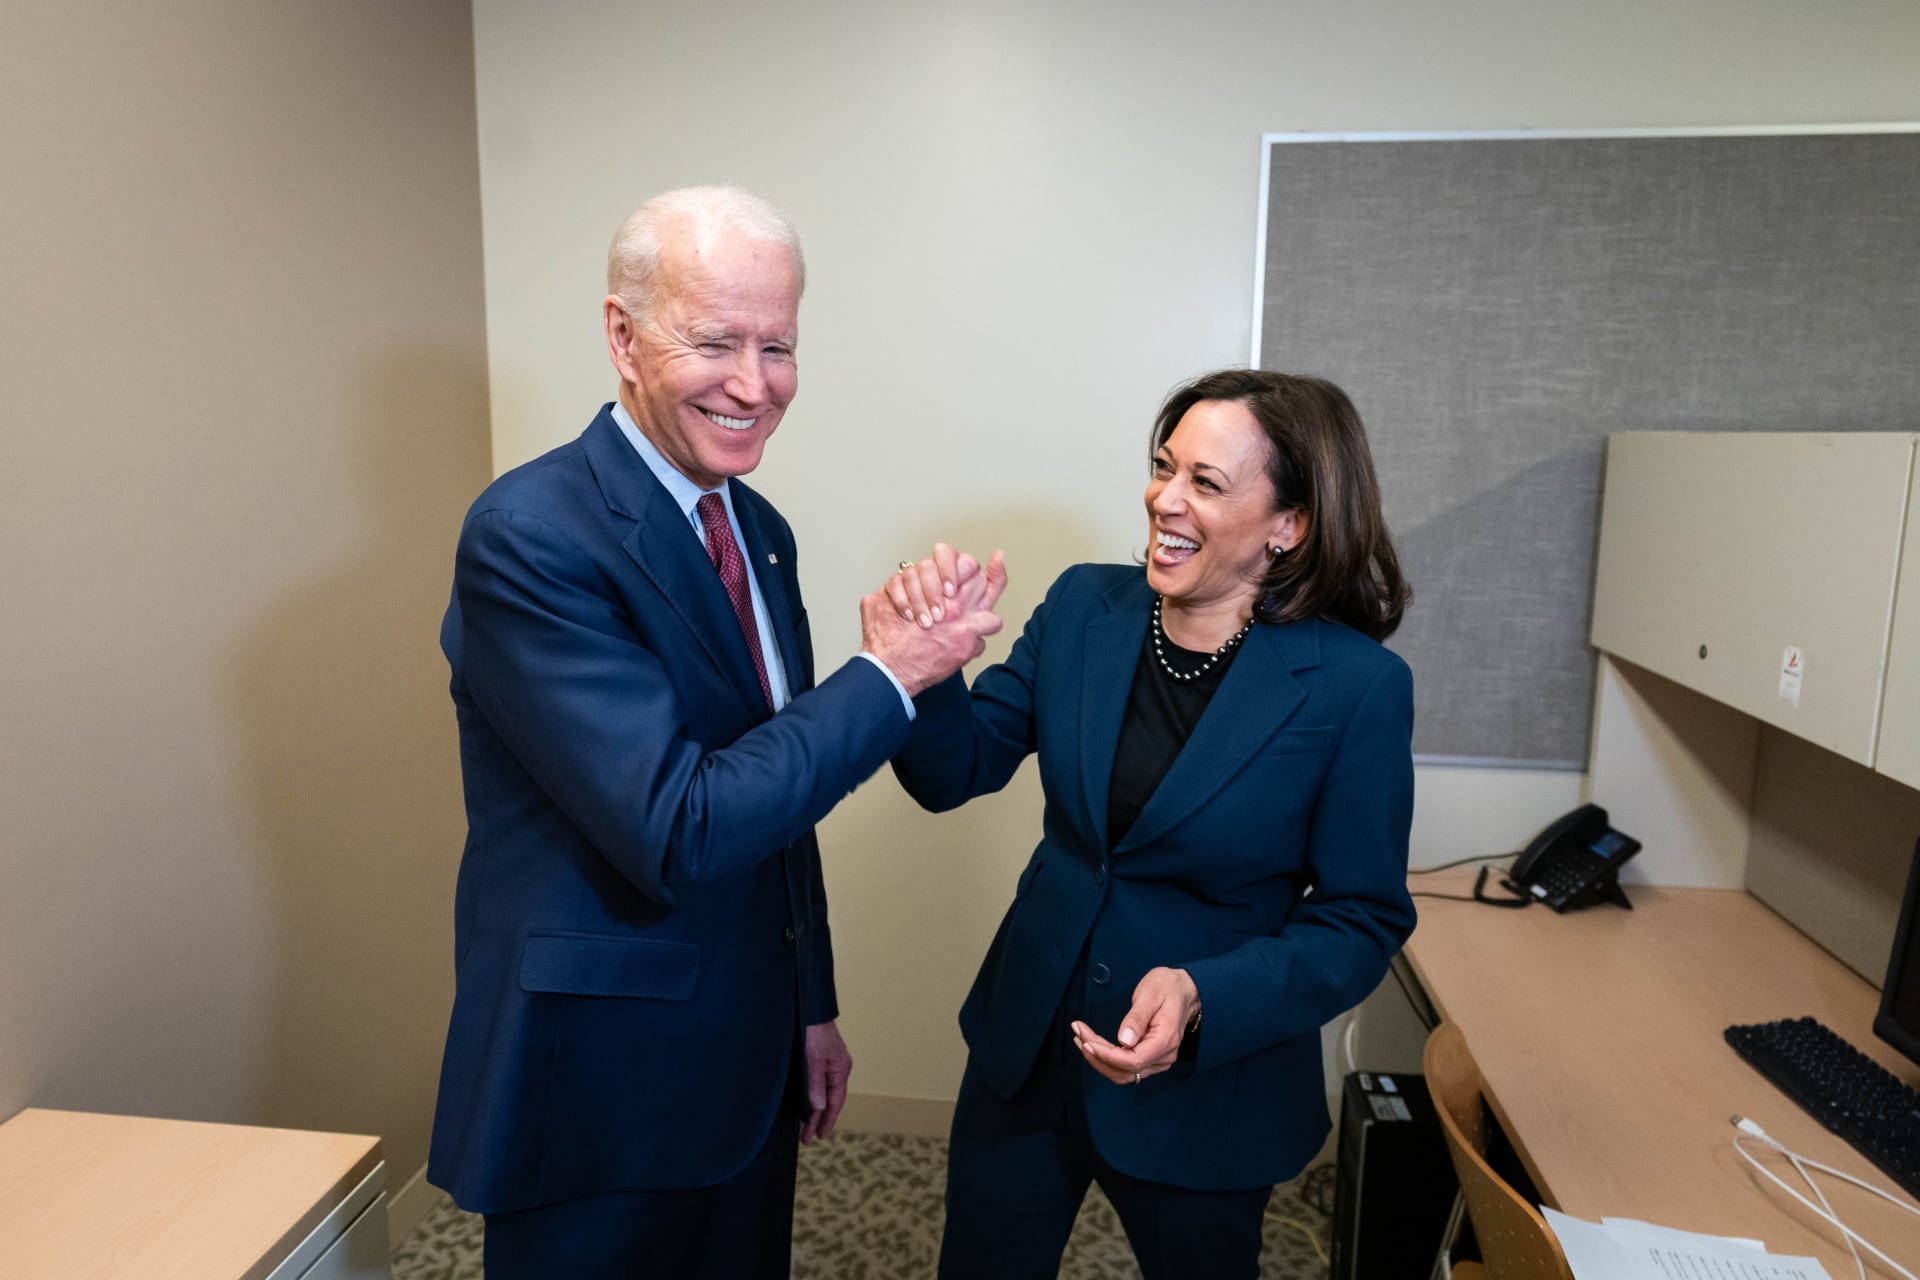 Nově zvolený prezident USA Joe Biden s viceprezidentkou Kamalou Harrisovou 